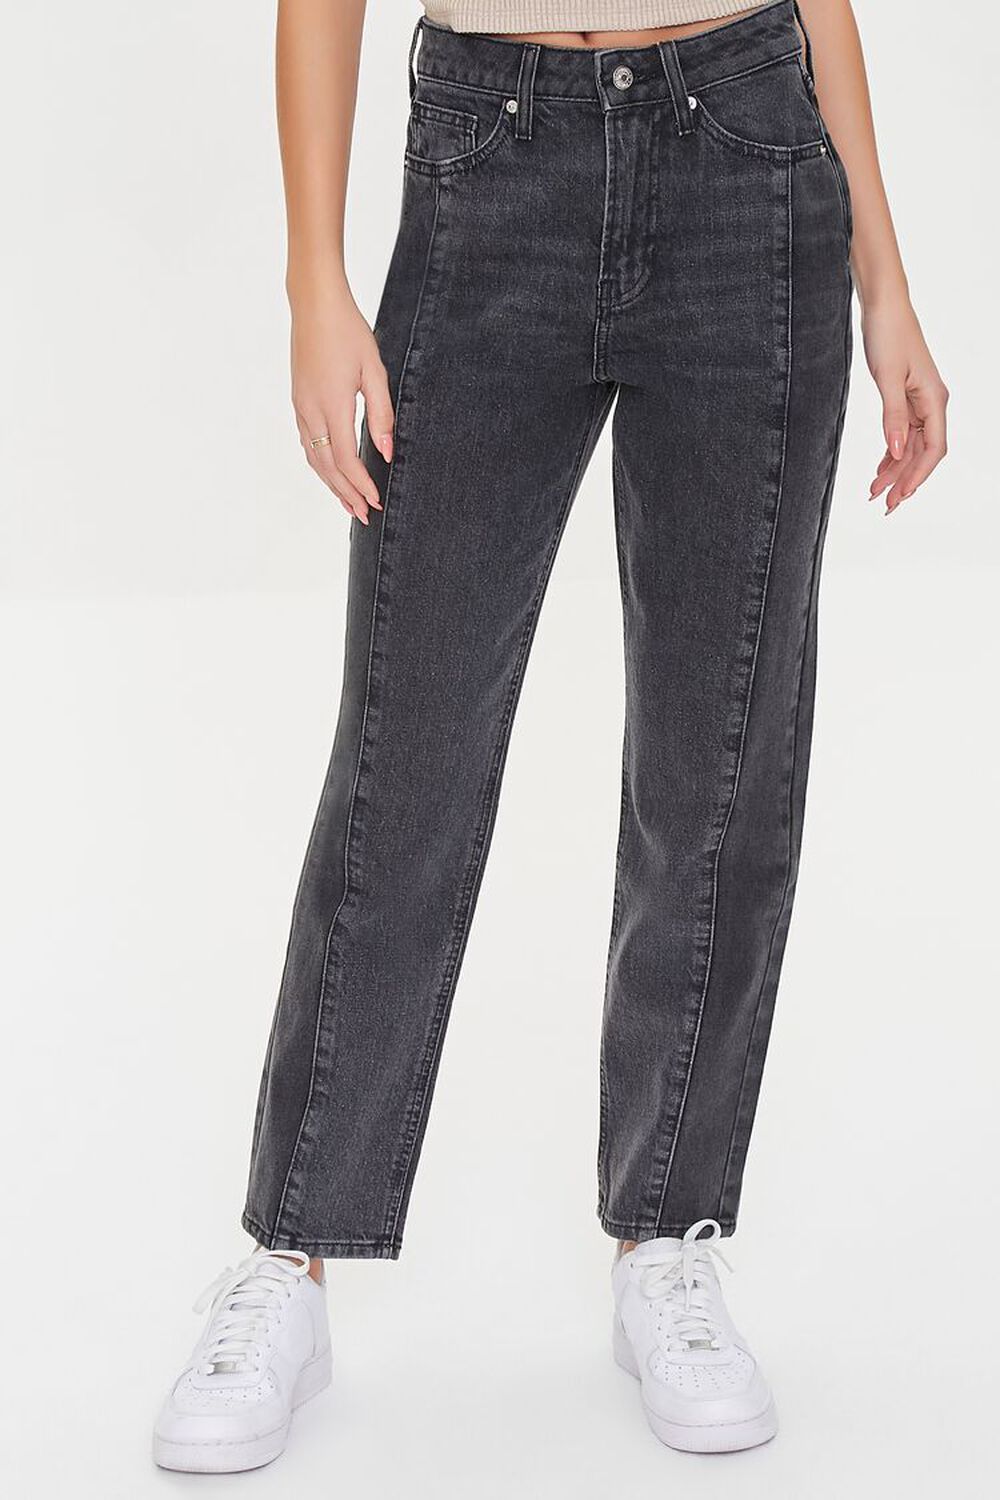 WASHED BLACK/BLACK Patchwork High-Rise Mom Jeans, image 2